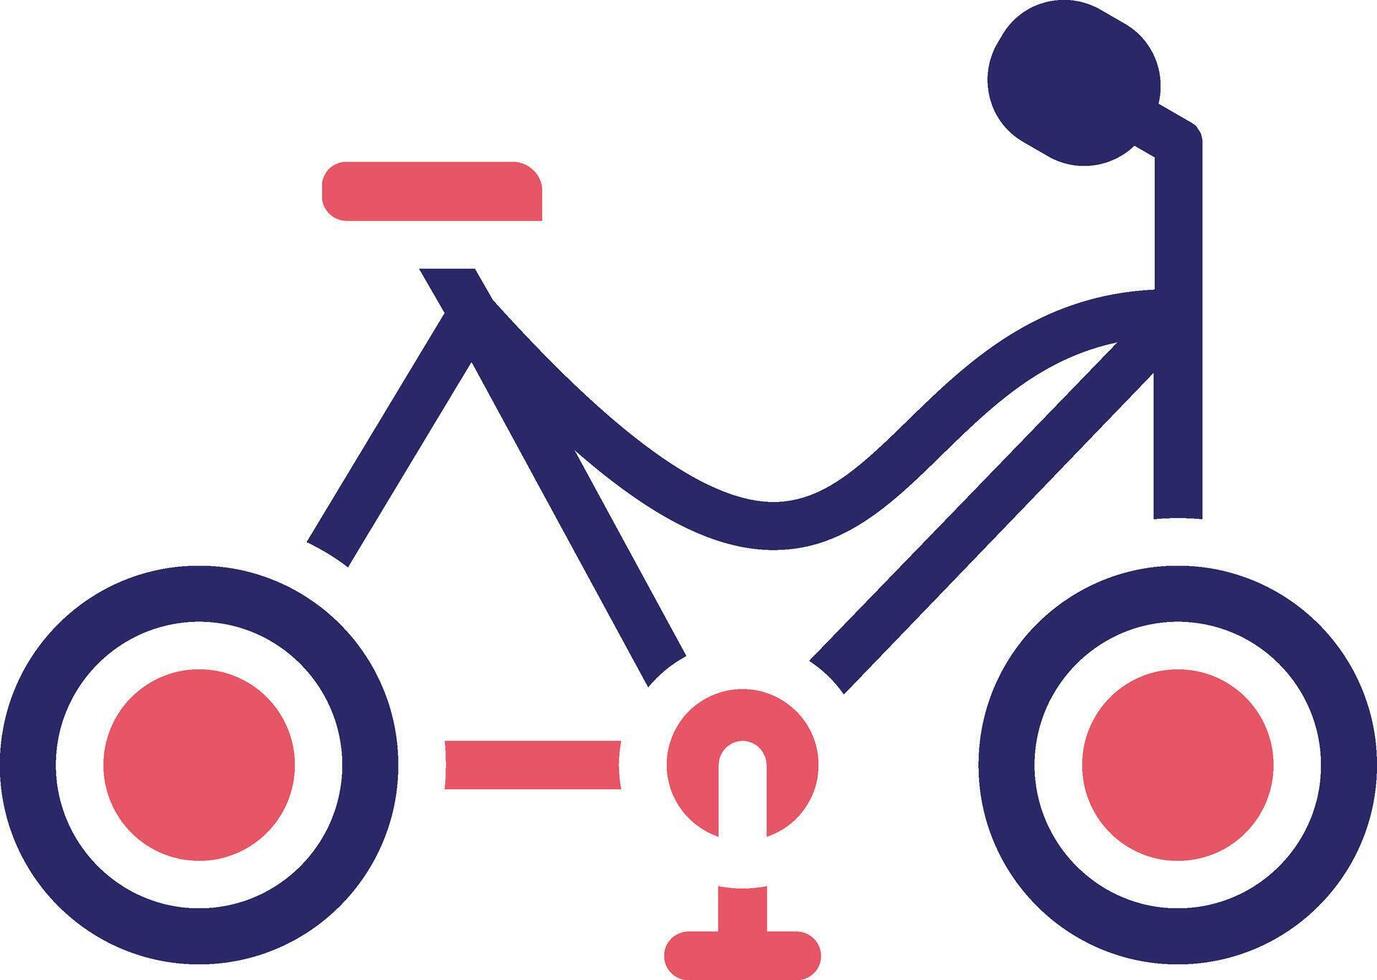 bicicleta brinquedo vetor ícone